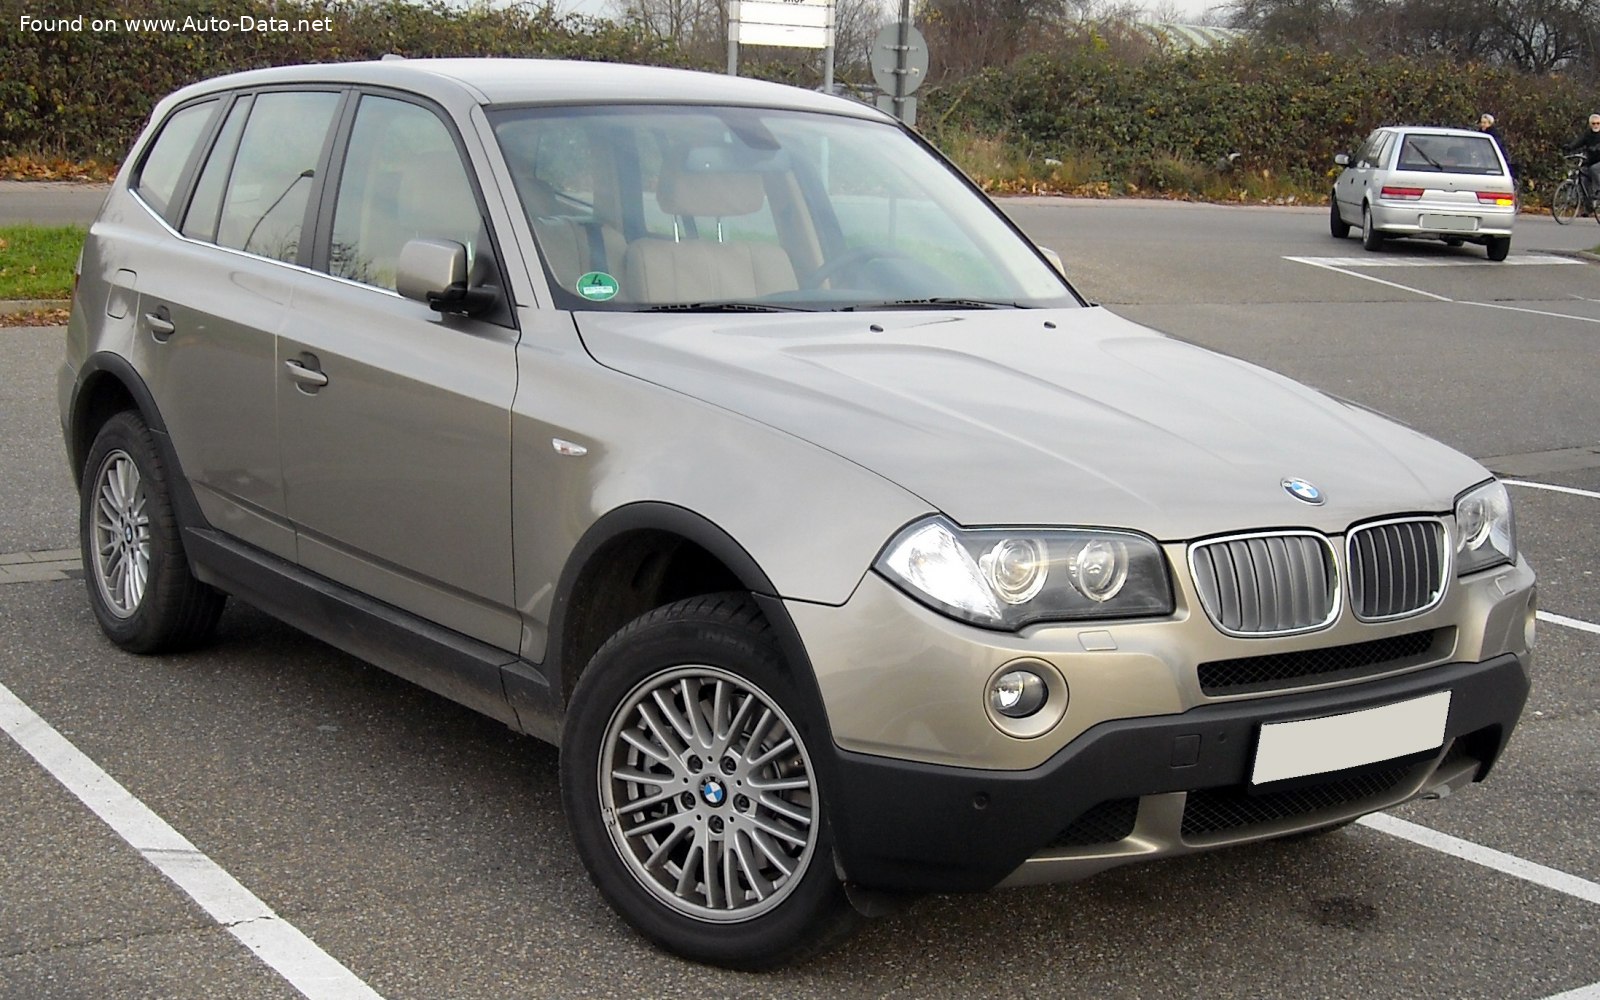 2006 BMW X3 (E83, facelift 2006) 2.5si (218 CH)